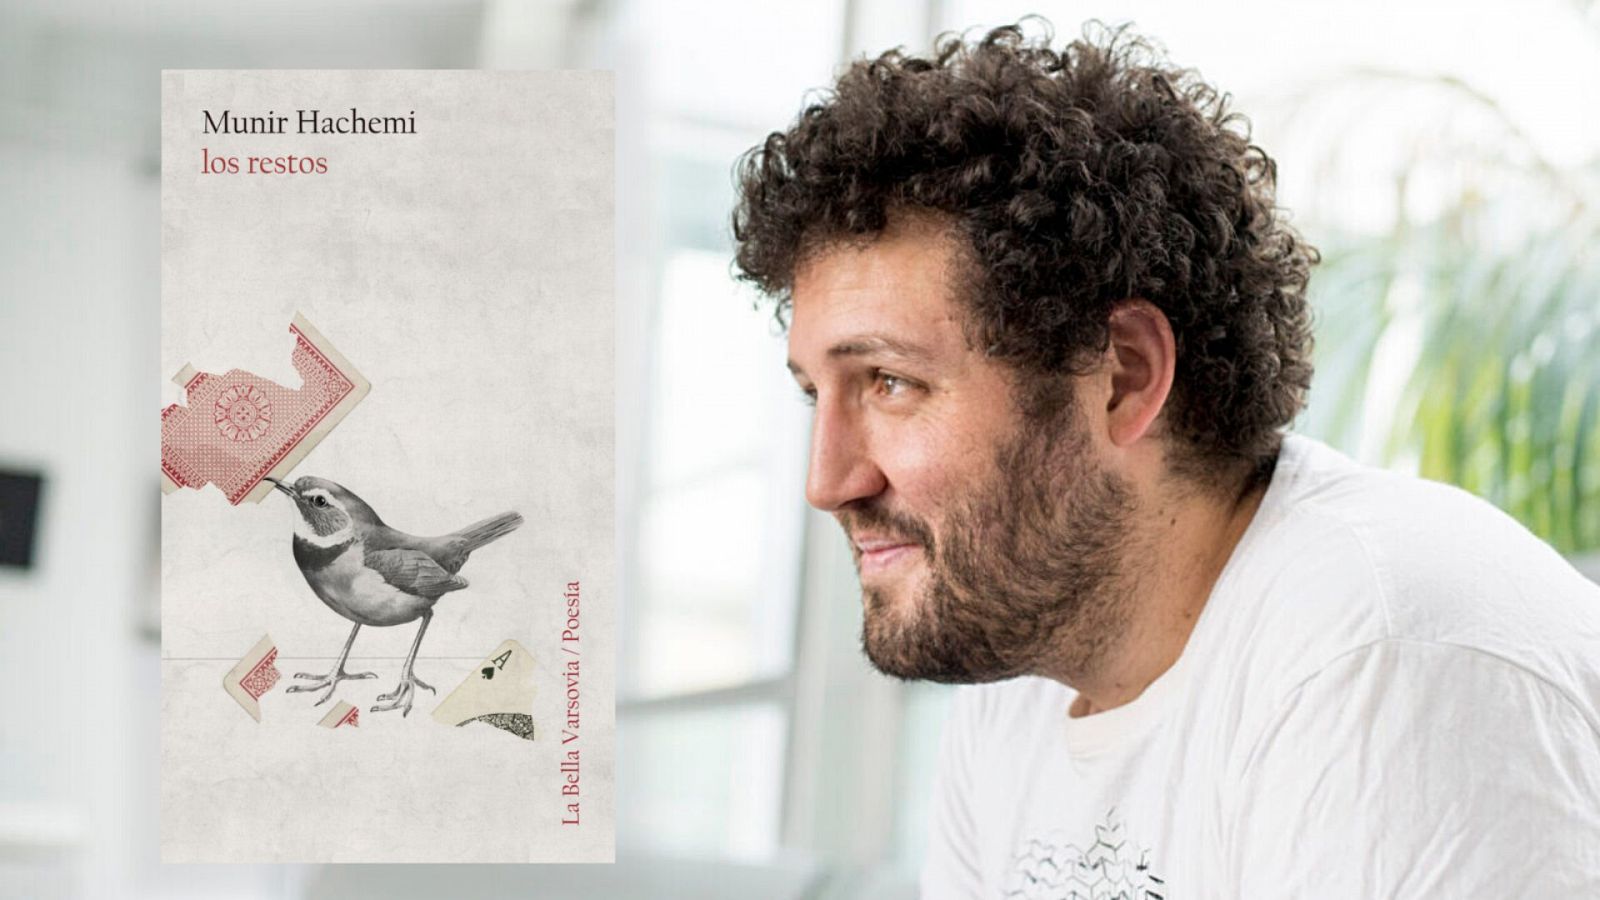 El ojo crítico - Munir Hachemi, Premio El Ojo Crítico de Poesía 2022 - Escuchar ahora